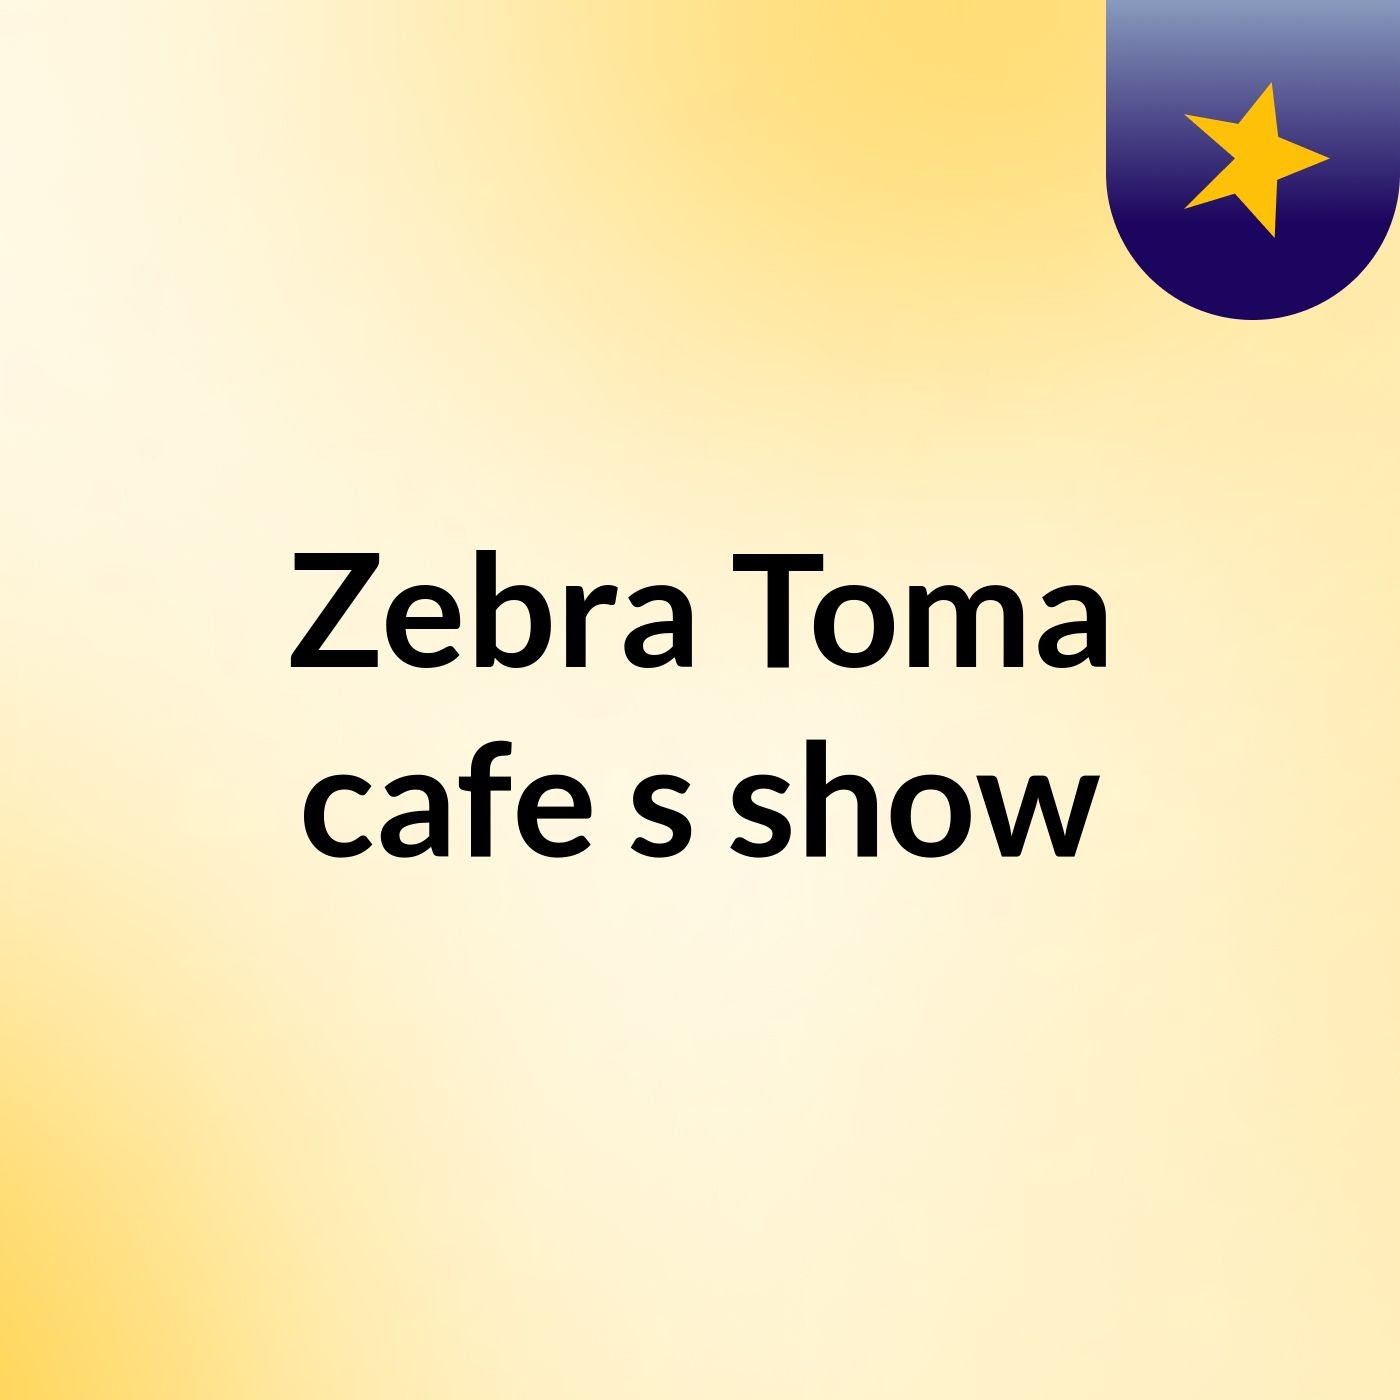 Zebra Toma cafe's show